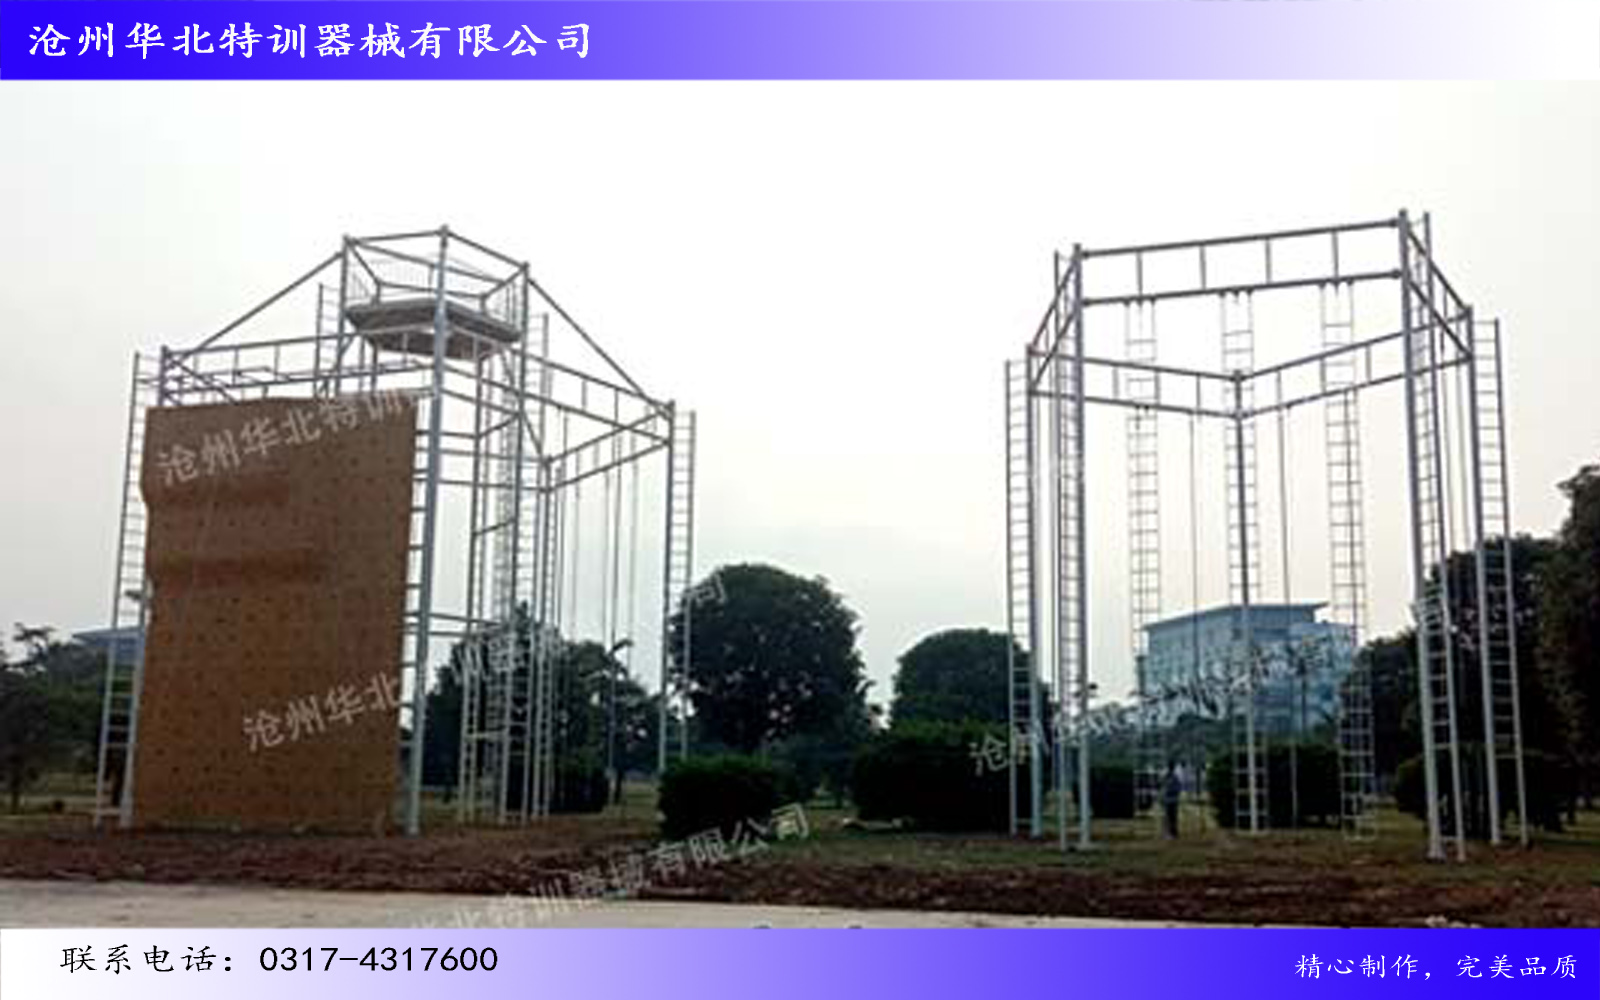 广西省贵港市高空组合拓展项目圆满完工！